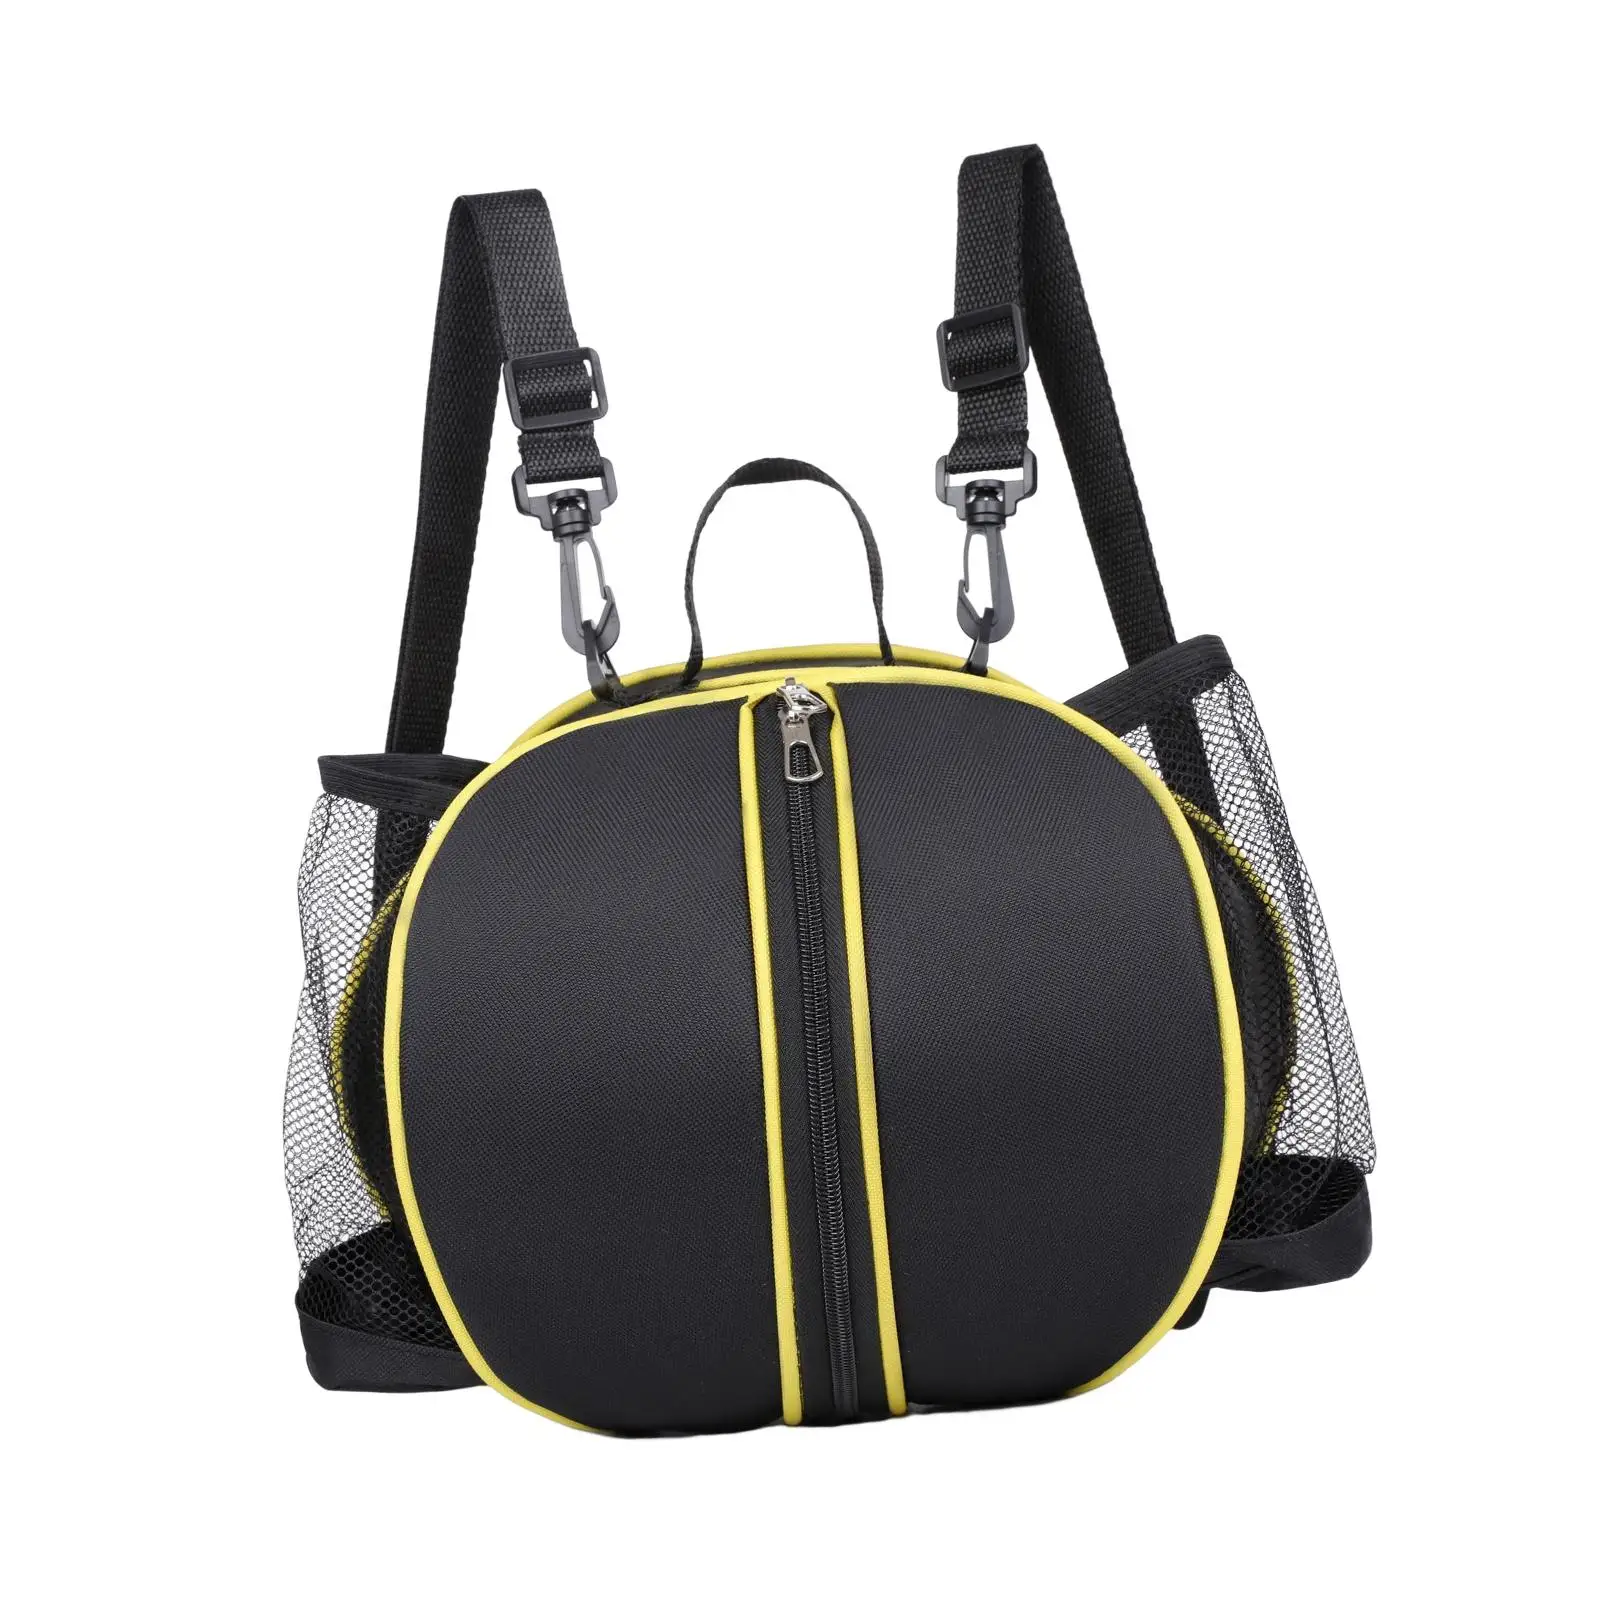 Basketball shoulder bag football storage bag holder with two